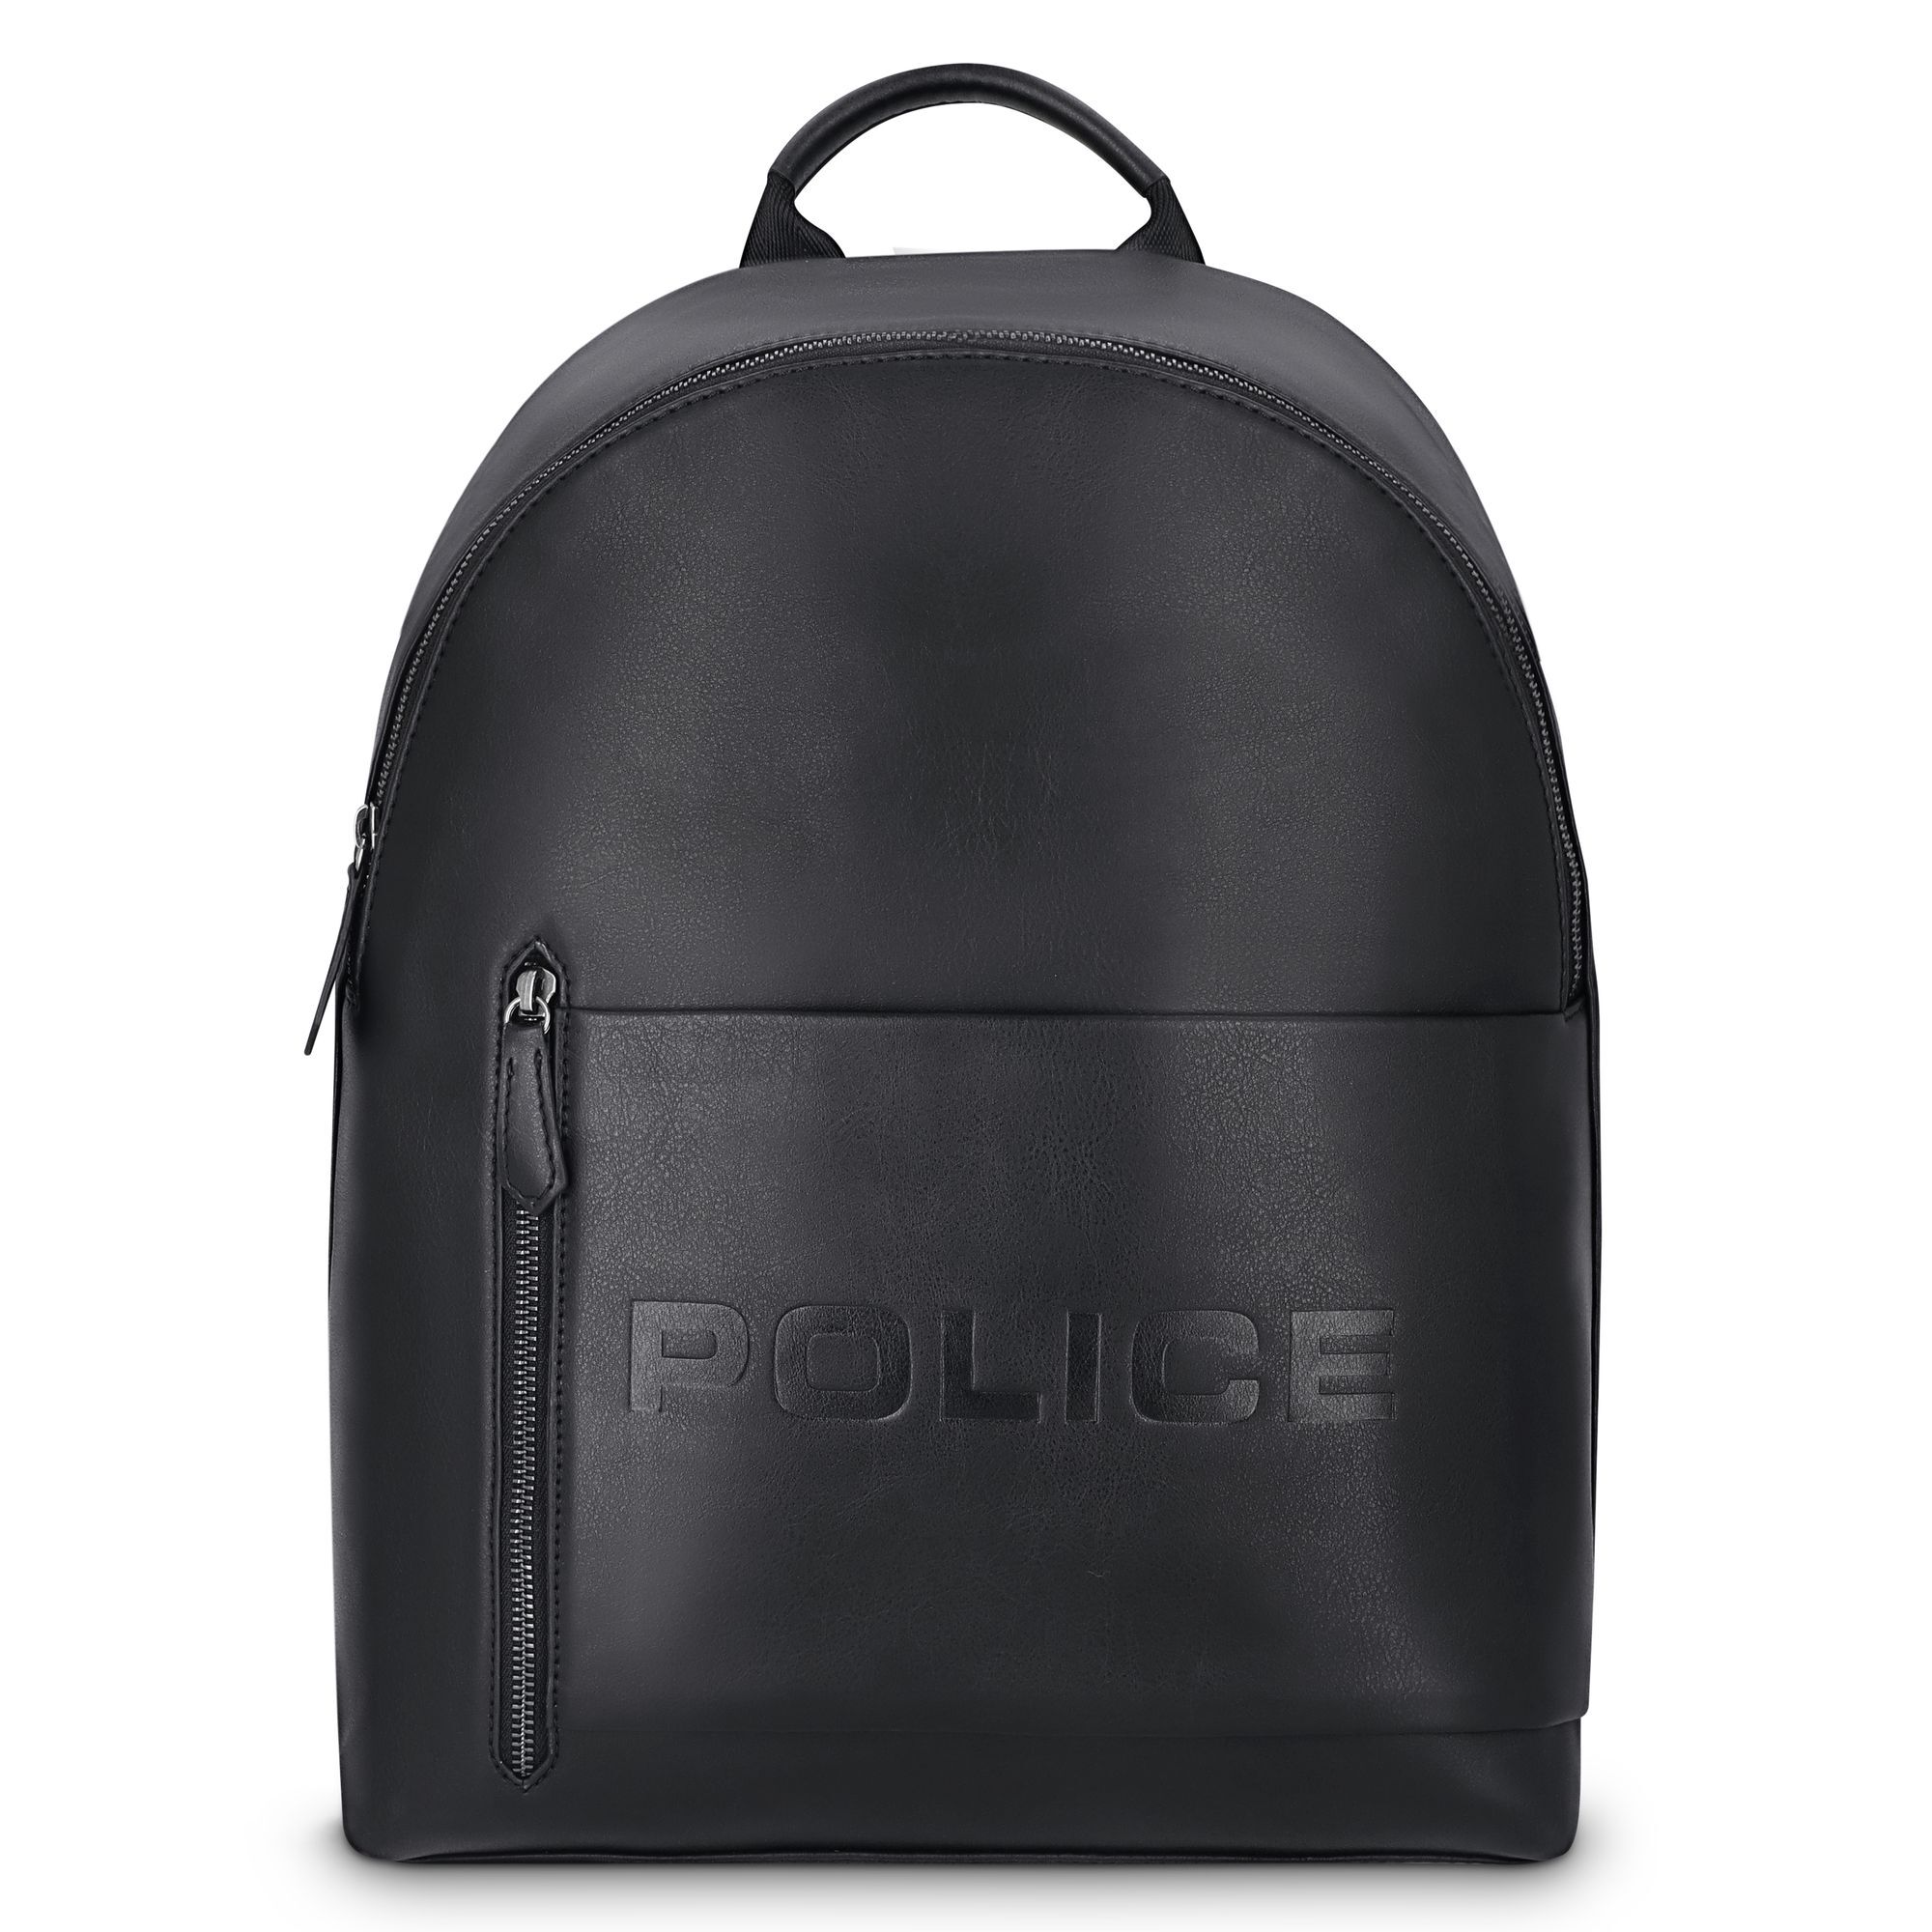 Рюкзак Police 41 cm Laptopfach, черный